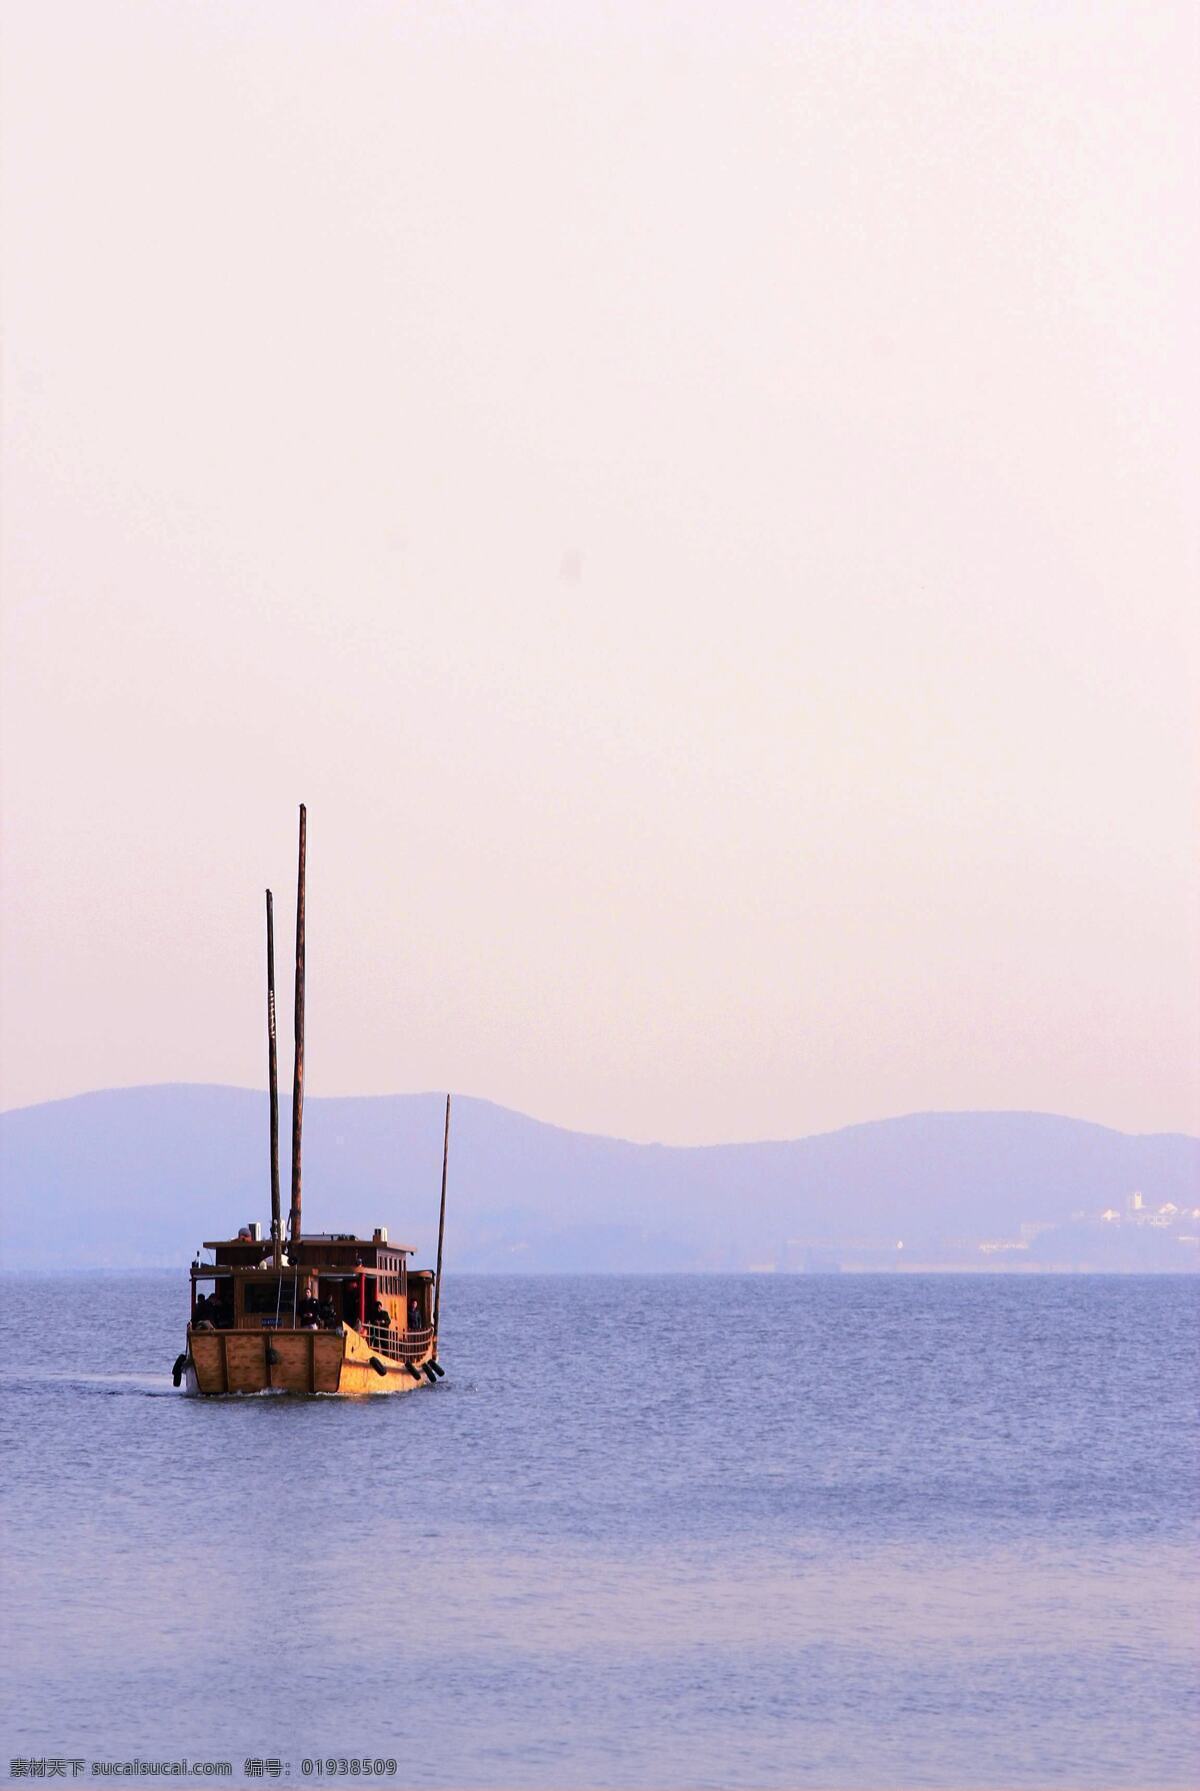 无锡 太湖 渔船 蓝色 傍晚 旅游摄影 风景图片 自然风景